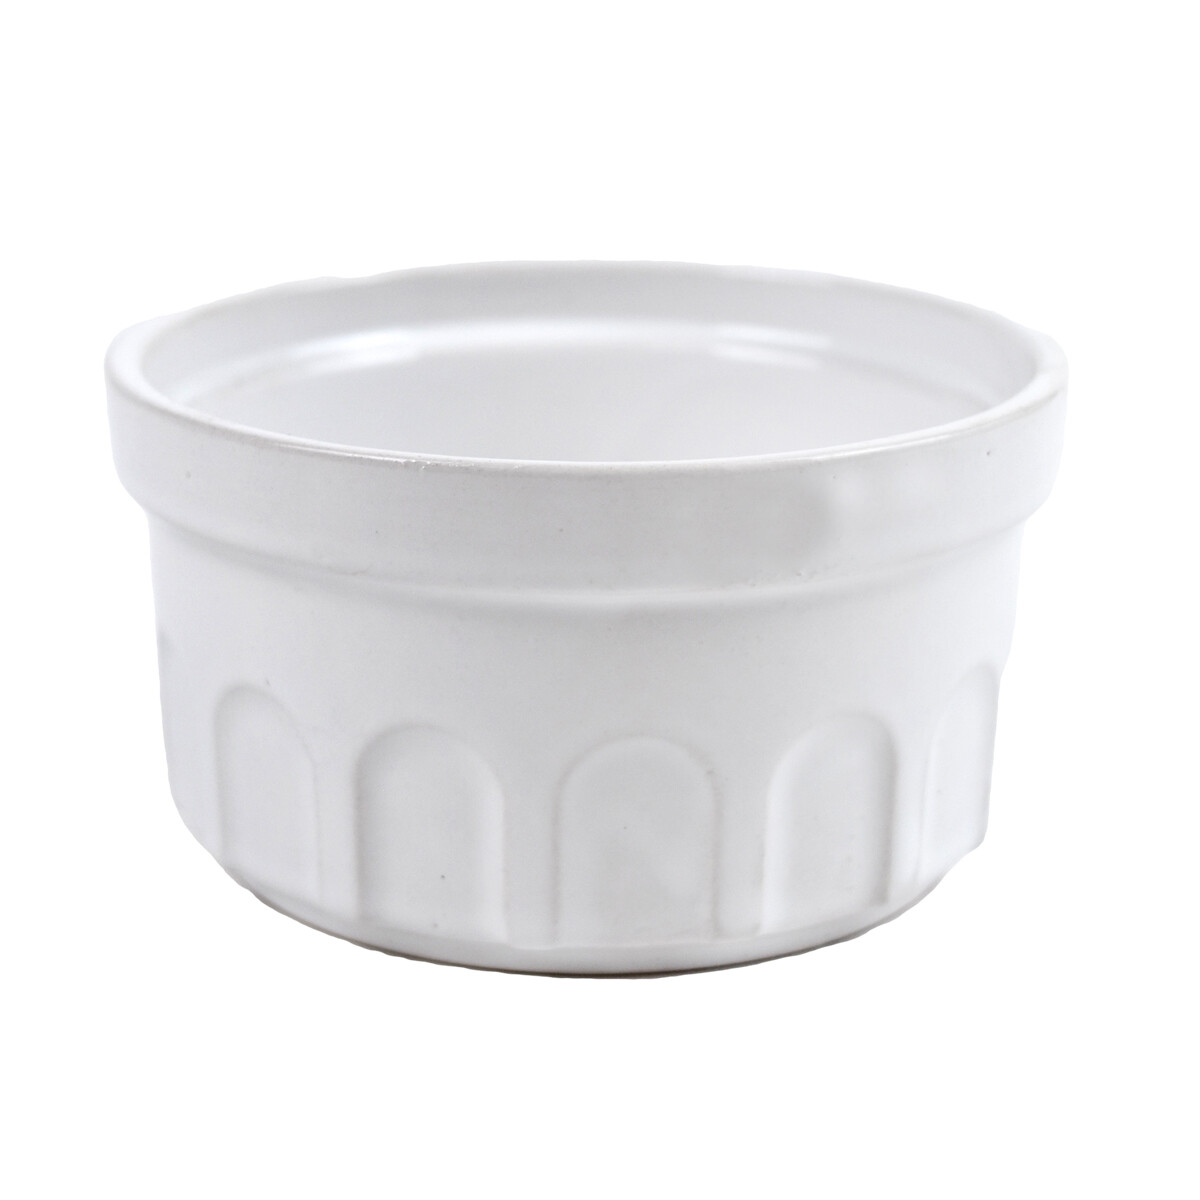 Bowl de cerámica para suffle labrado TOP-001 